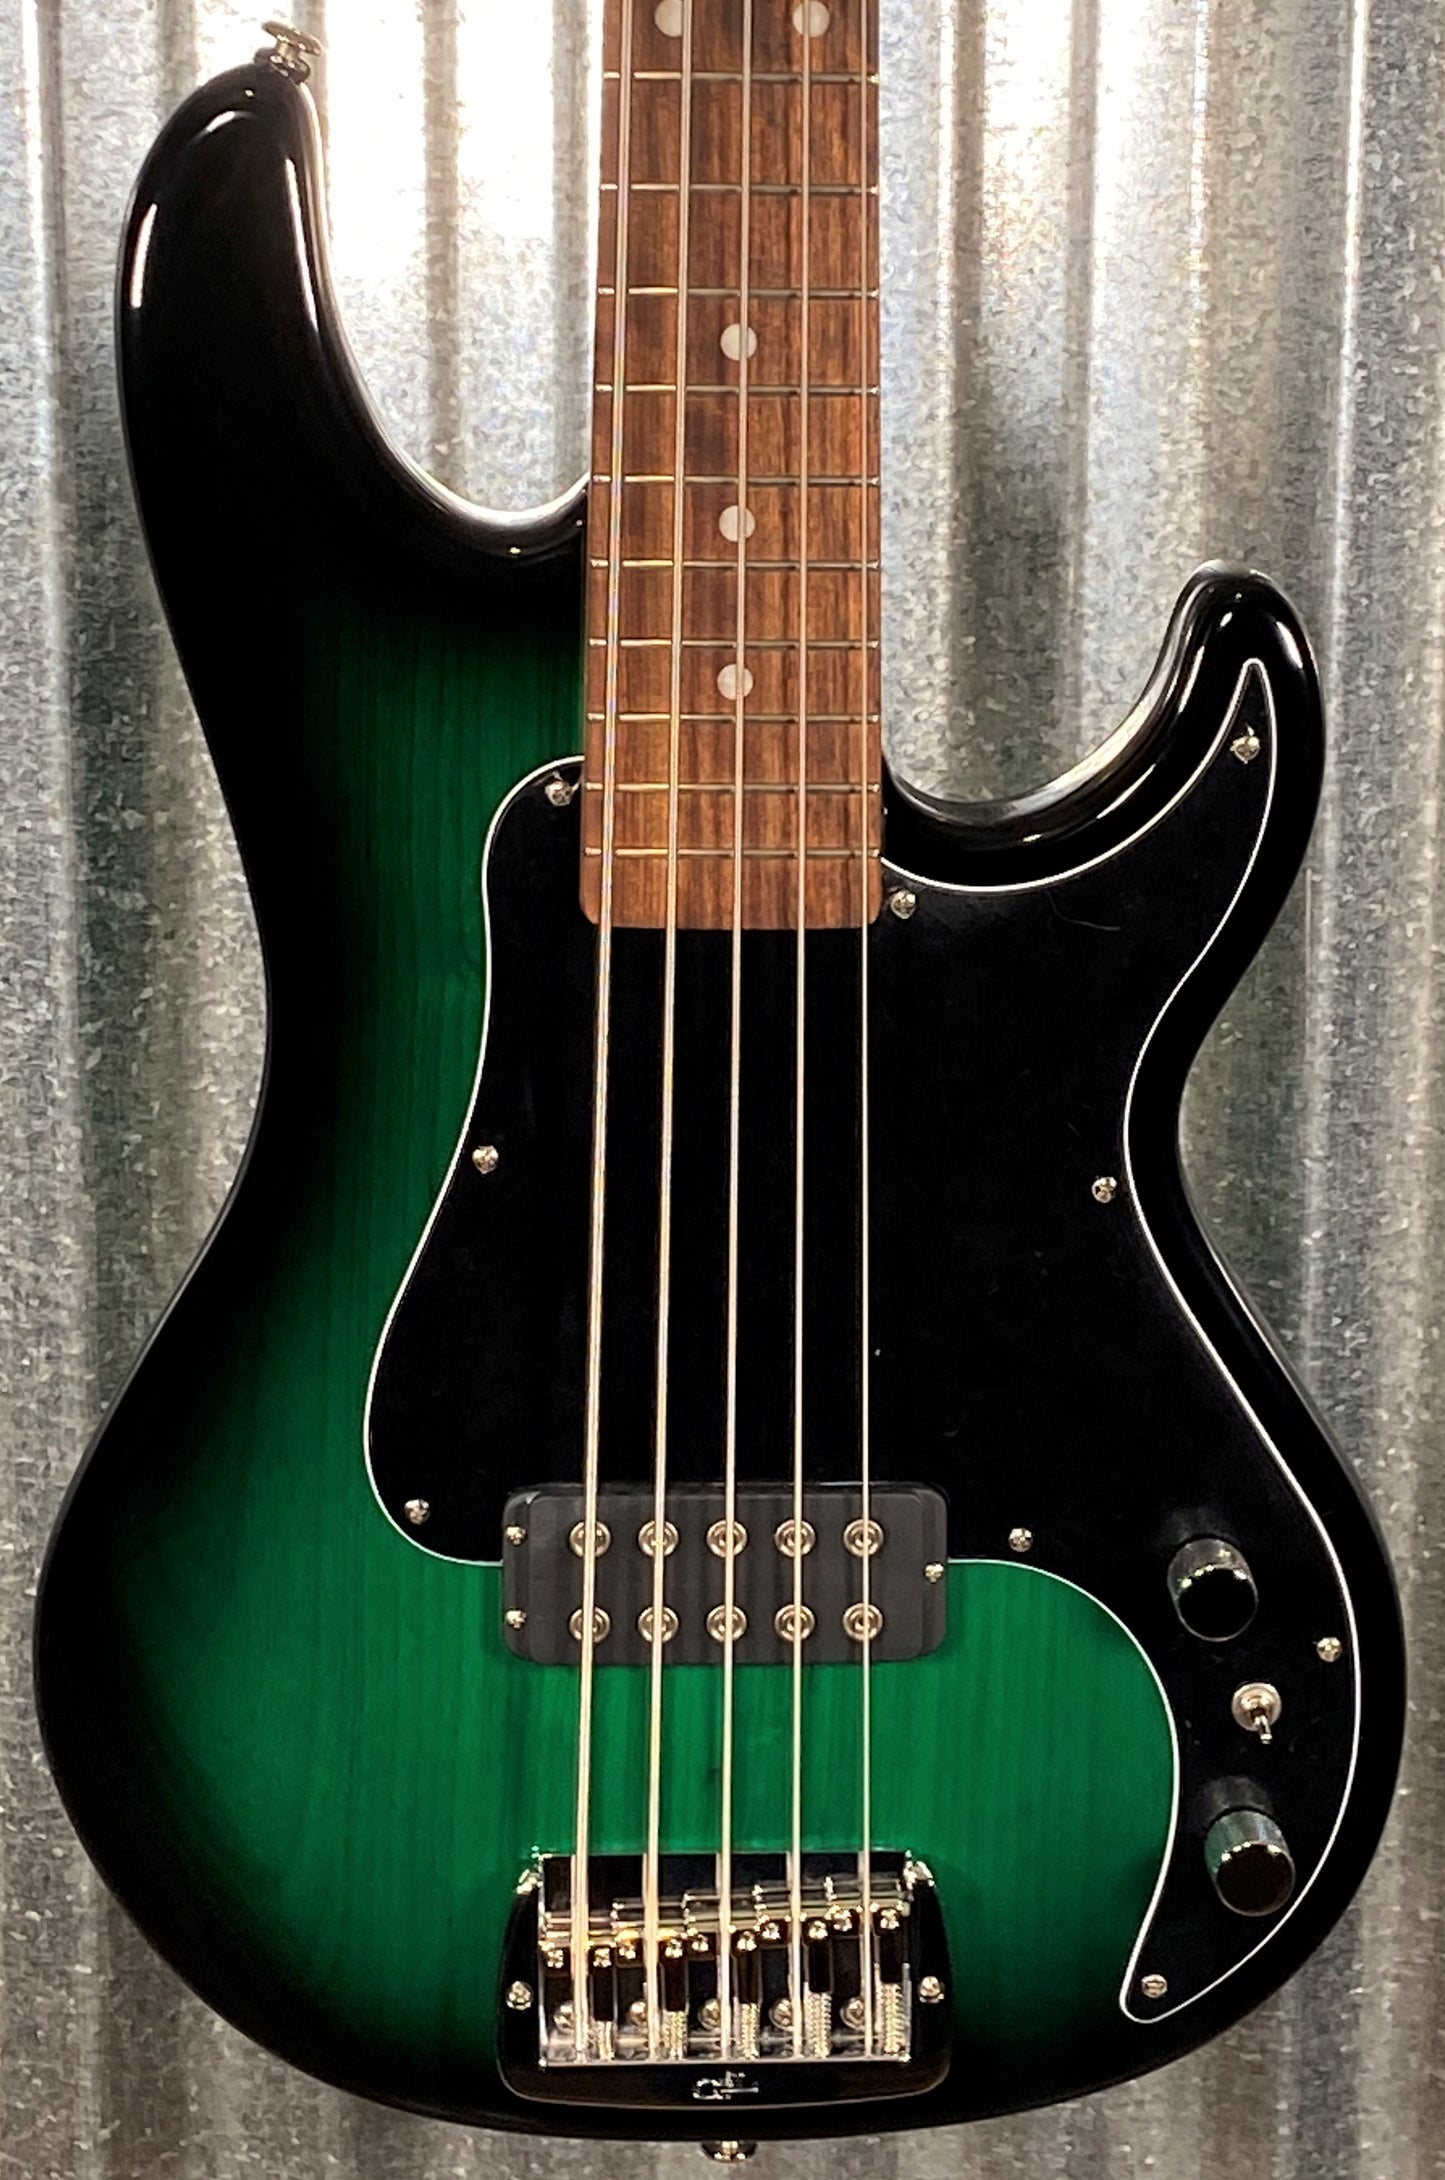 G&L USA Kiloton 5 String Bass Greenburst & Case #5154